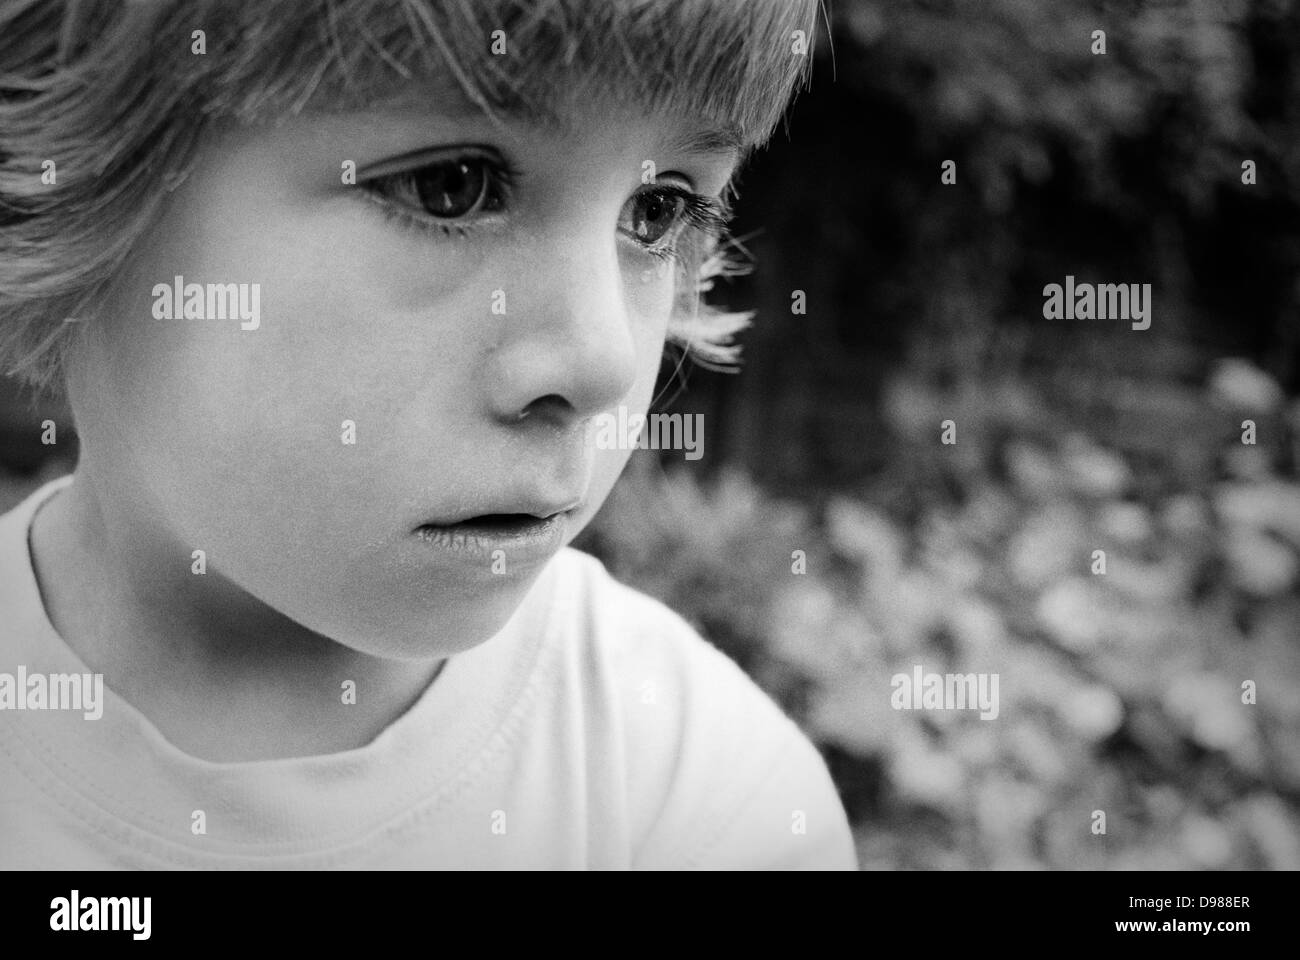 Ein 4 jähriges Mädchen wirft eine Träne in einem emotionalen Moment während des Spielens in ihrem Garten hinter dem Haus. Gesehen in Nahaufnahme Detail sehen wir eine Träne kroch ihr rechtes Auge und einem anderen, der seinen Weg über ihre linke Wange - ihre großen Augen schauen traurig und verärgert. Stockfoto